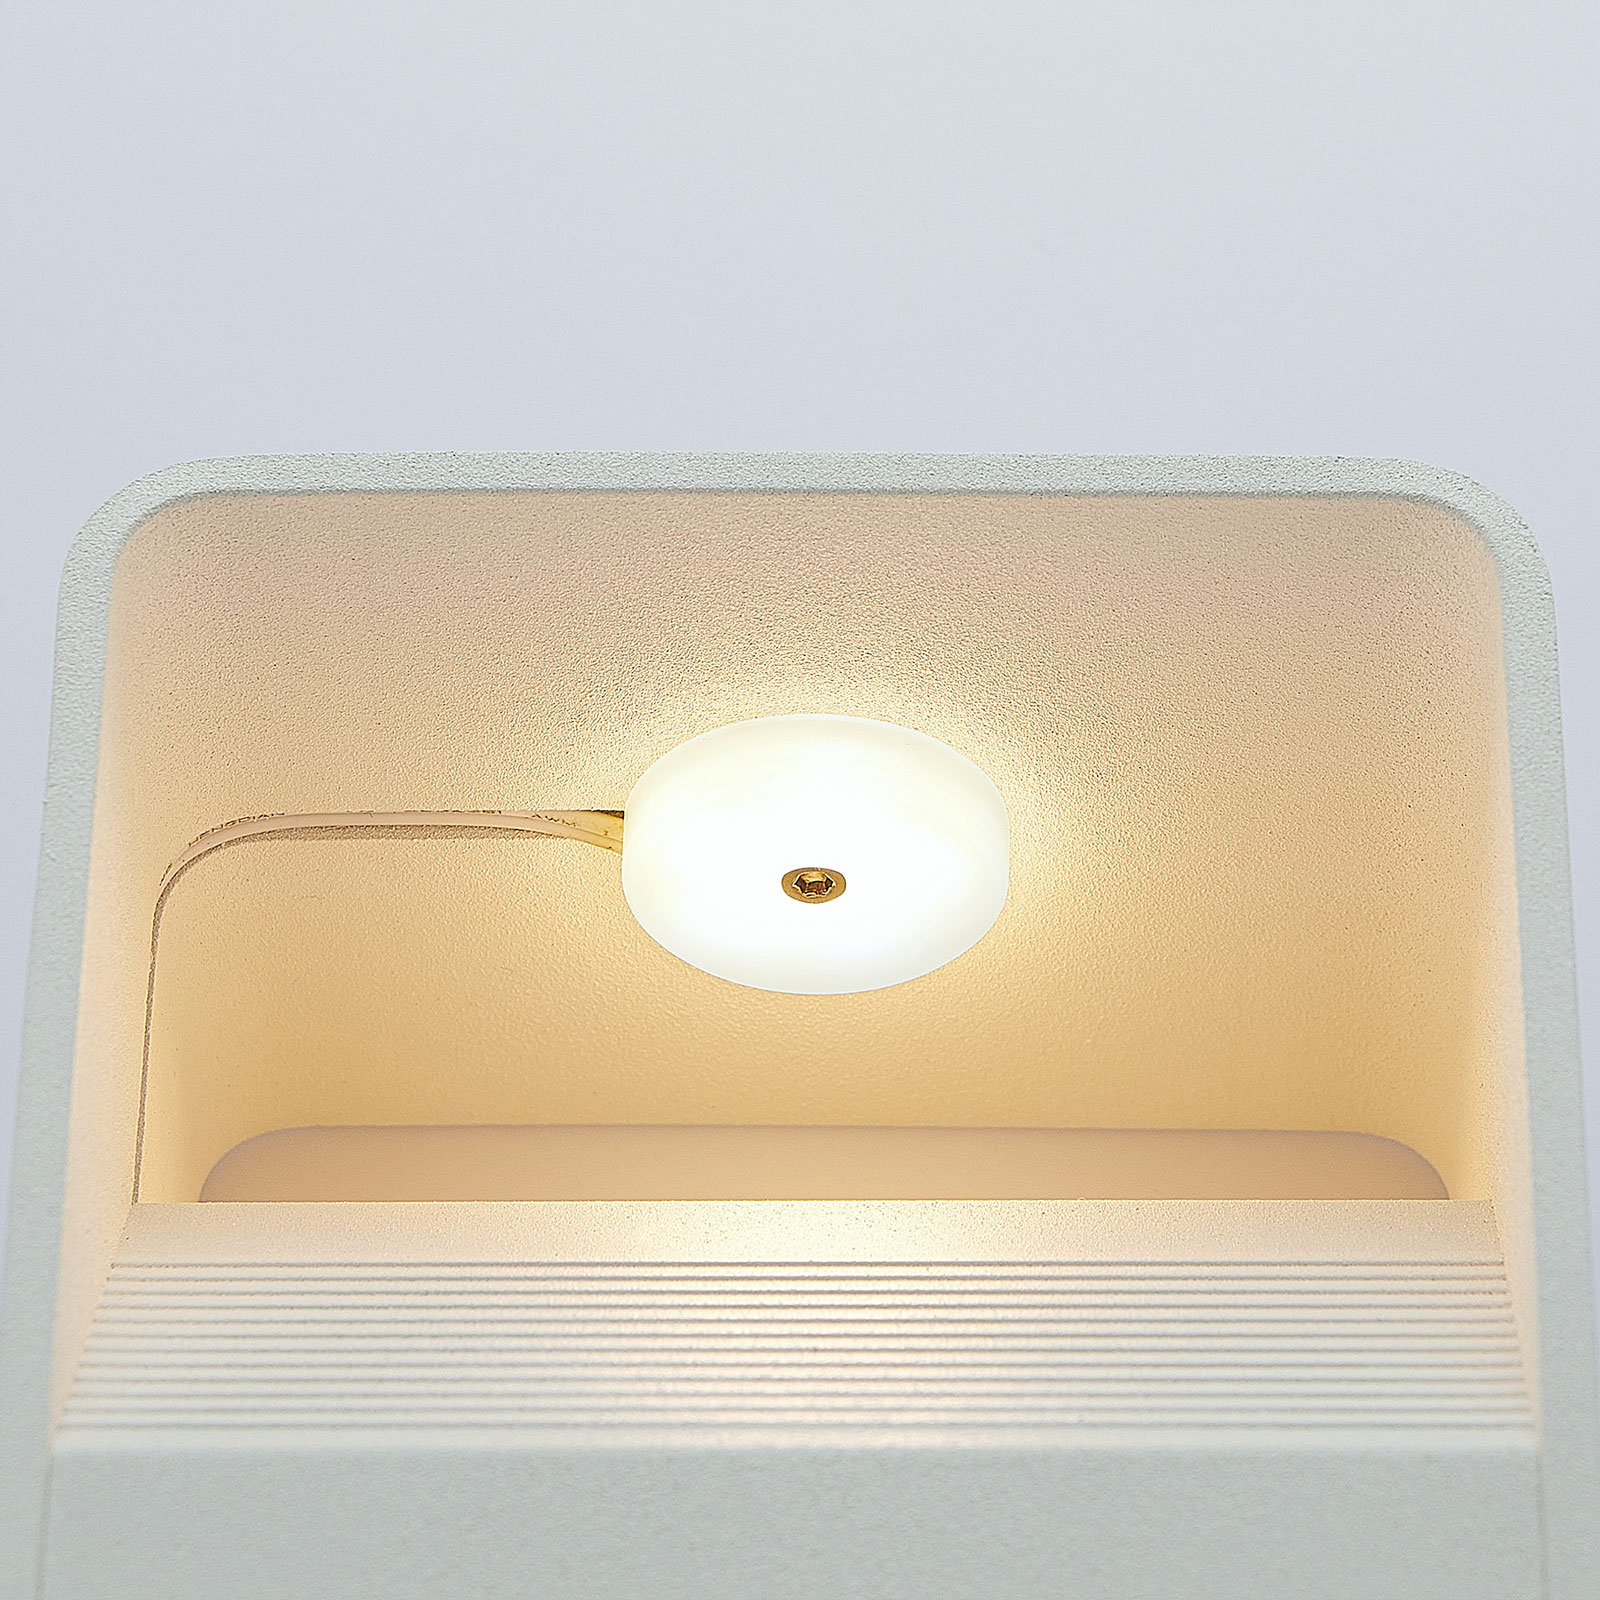 Nástěnné LED světlo Lonisa, bílé, 10 cm